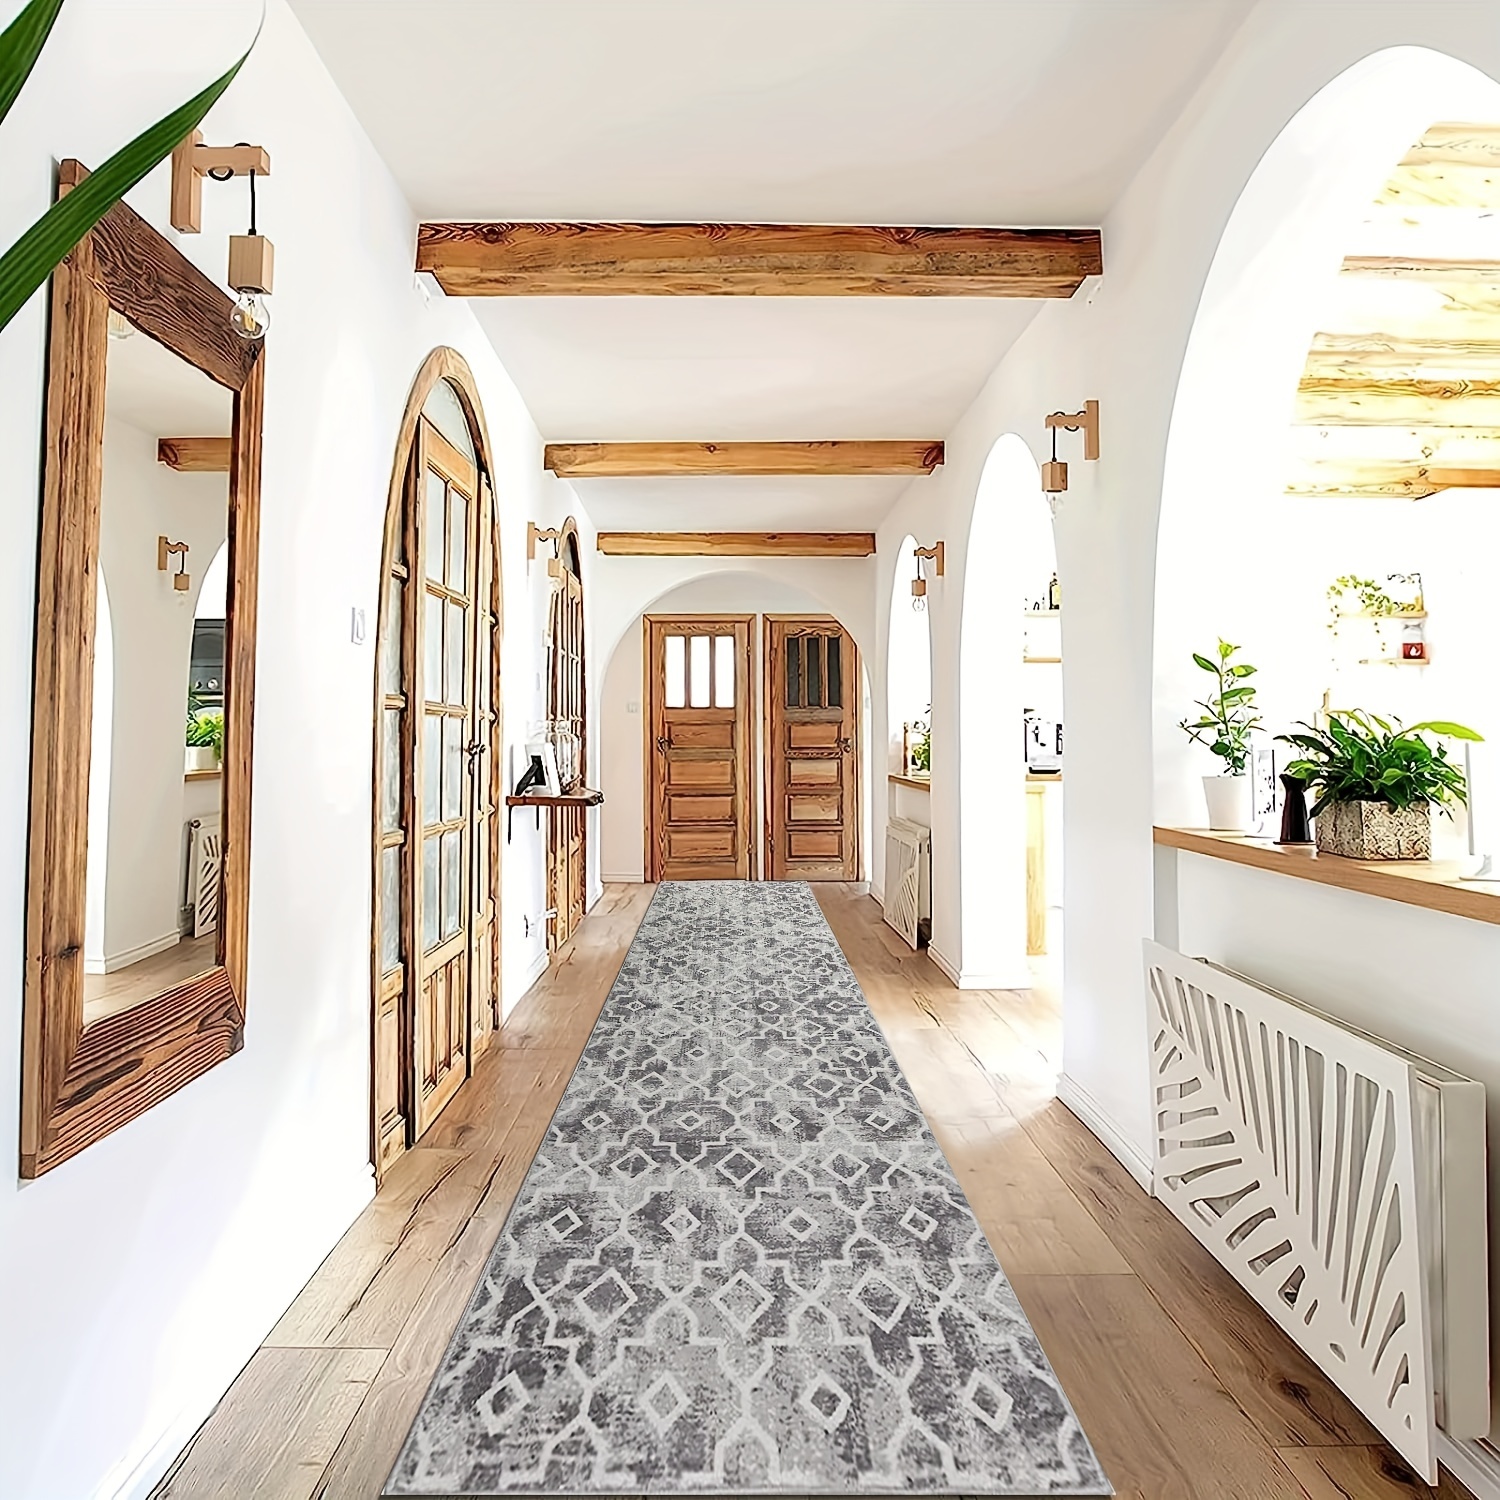 Front Door Mat Indoor And Outdoor Doormat Waterproof Anti-Slip Floor Mat  Imitation Coconut Rug Household And Commercial Carpet - AliExpress